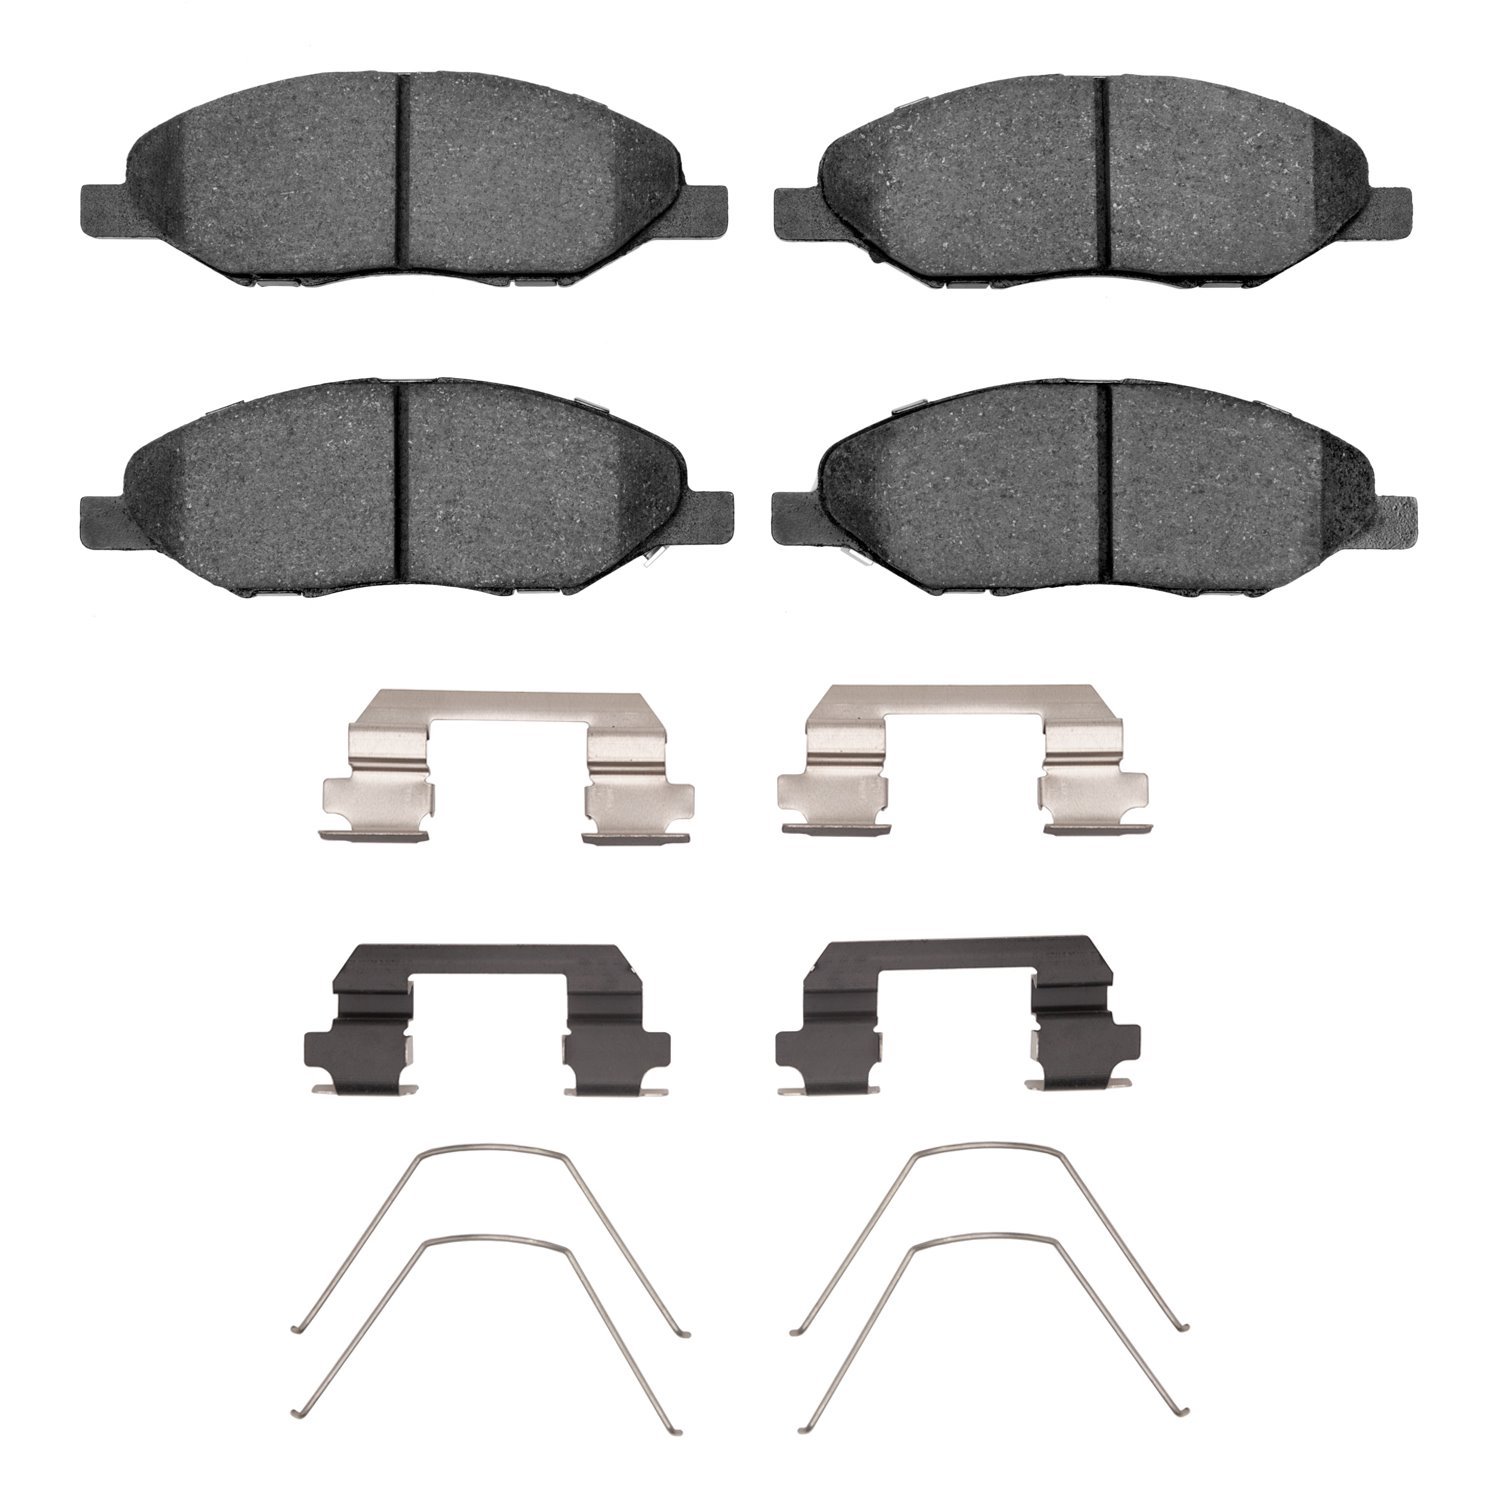 1310-1345-01 3000-Series Ceramic Brake Pads & Hardware Kit, 2007-2017 Infiniti/Nissan, Position: Front